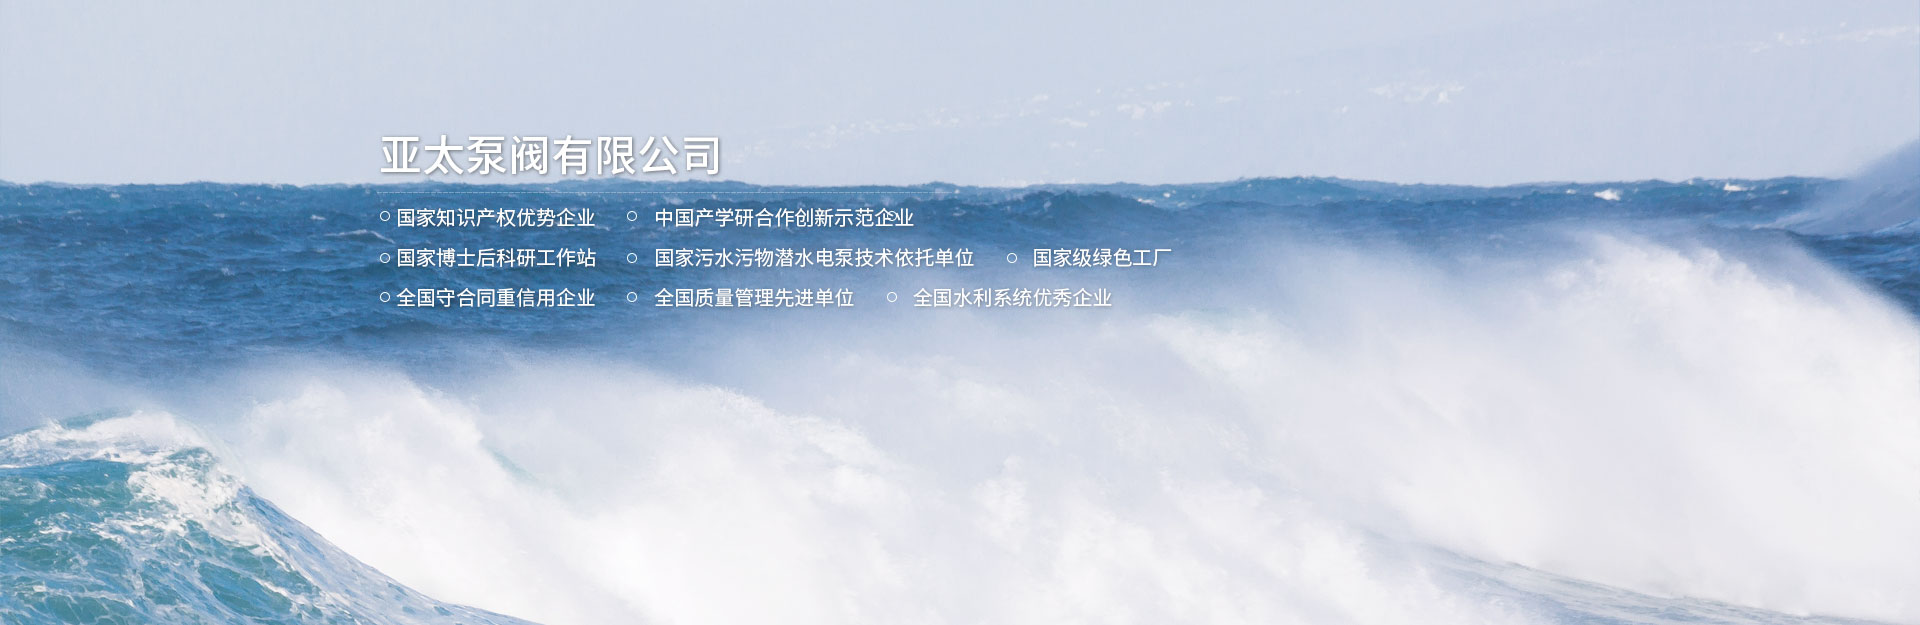 皇家88平台app下载(中国游)官方网站